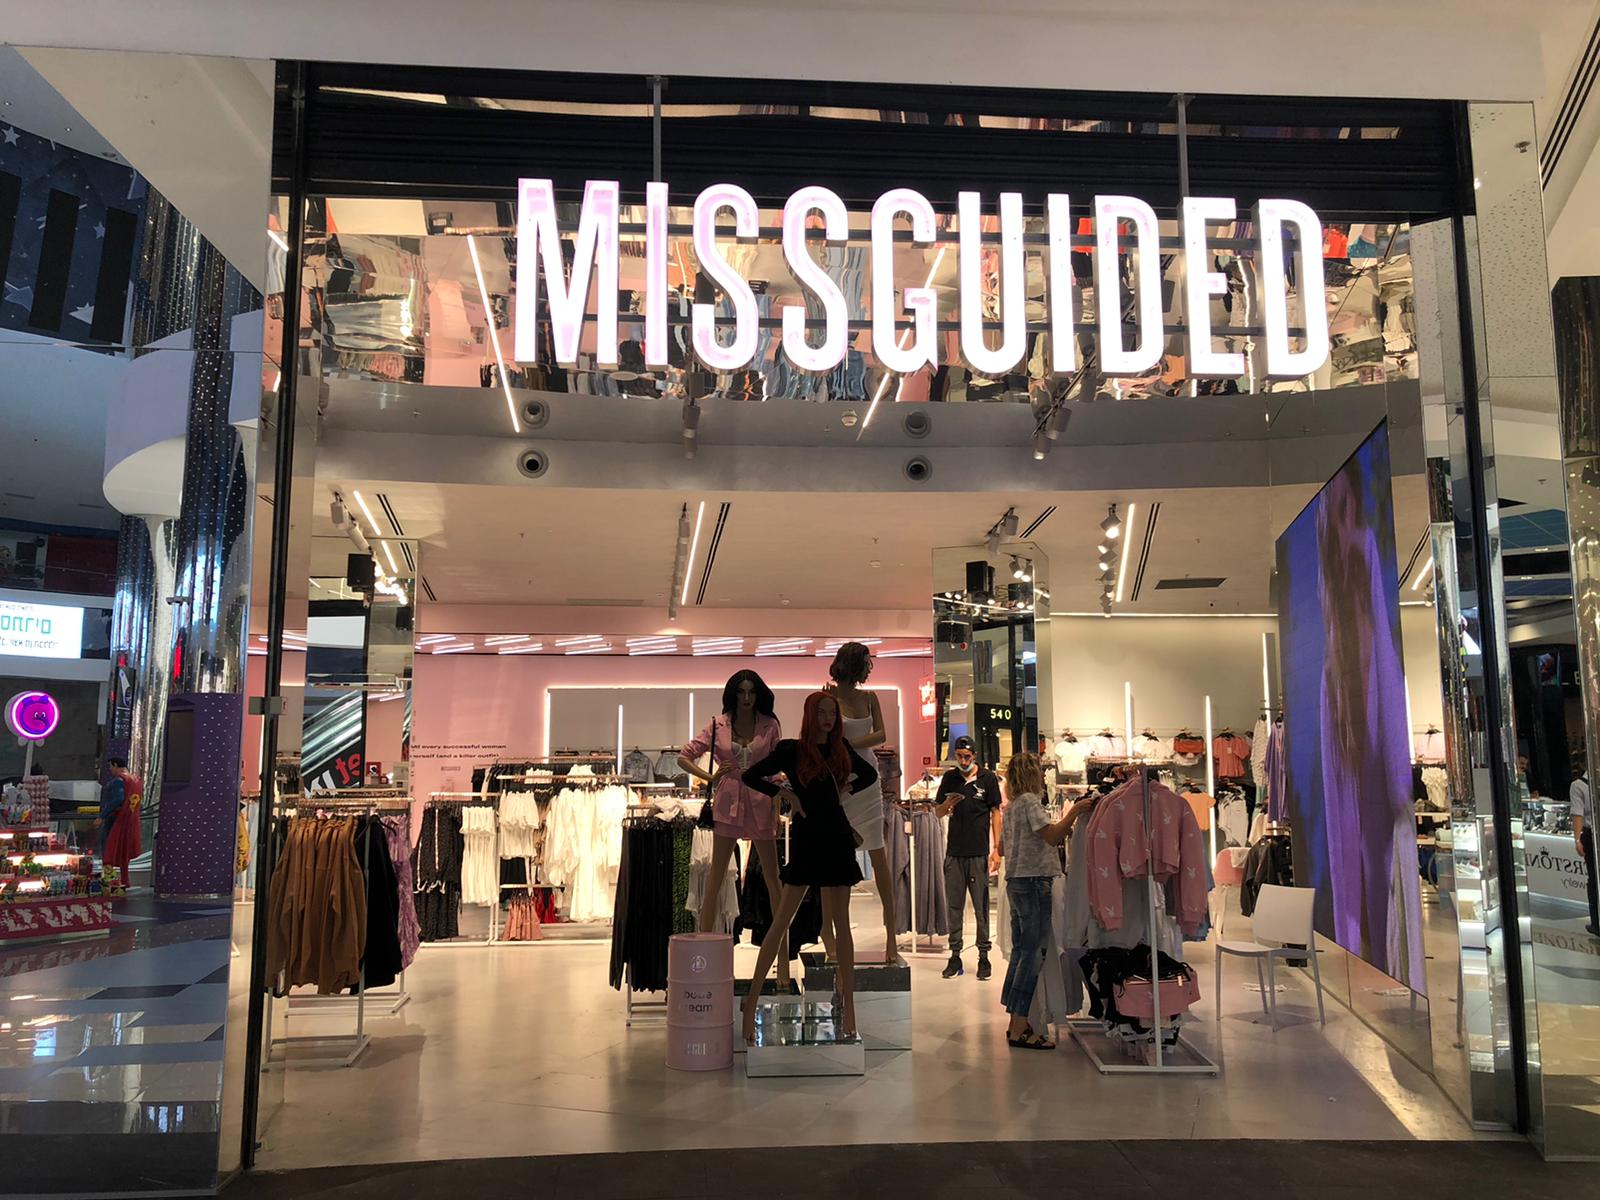 מתחם סינמה סיטי באר שבע ממשיך להתרחב ופתח את החנות הראשונה בארץ של המותג הבריטי הבינלאומי MISSGUIDED שכבש את כל העולם